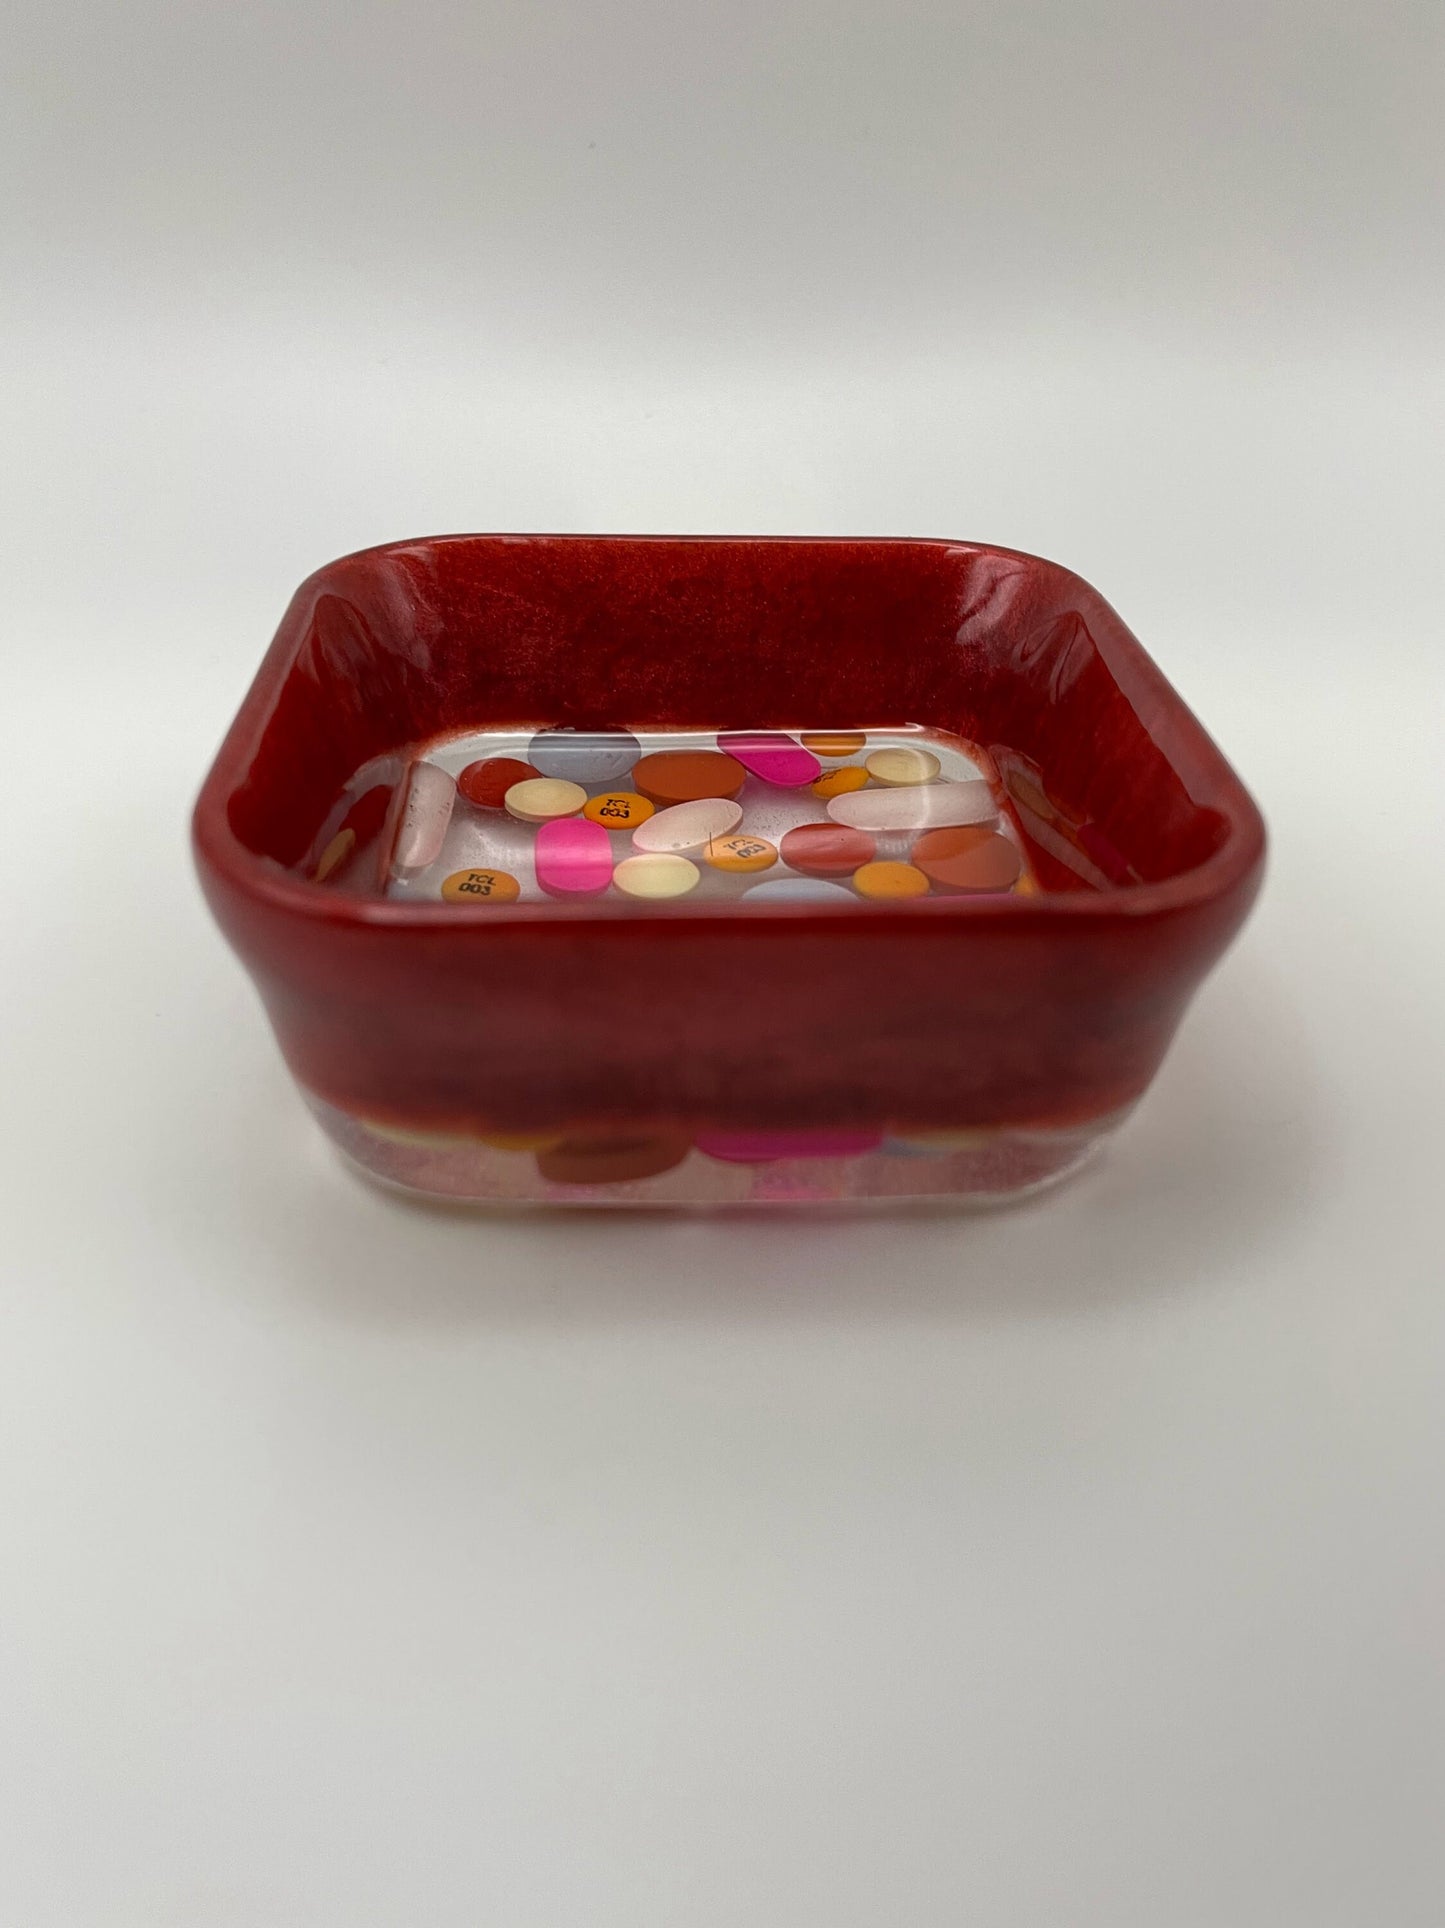 Resin medicine square trinket bowl